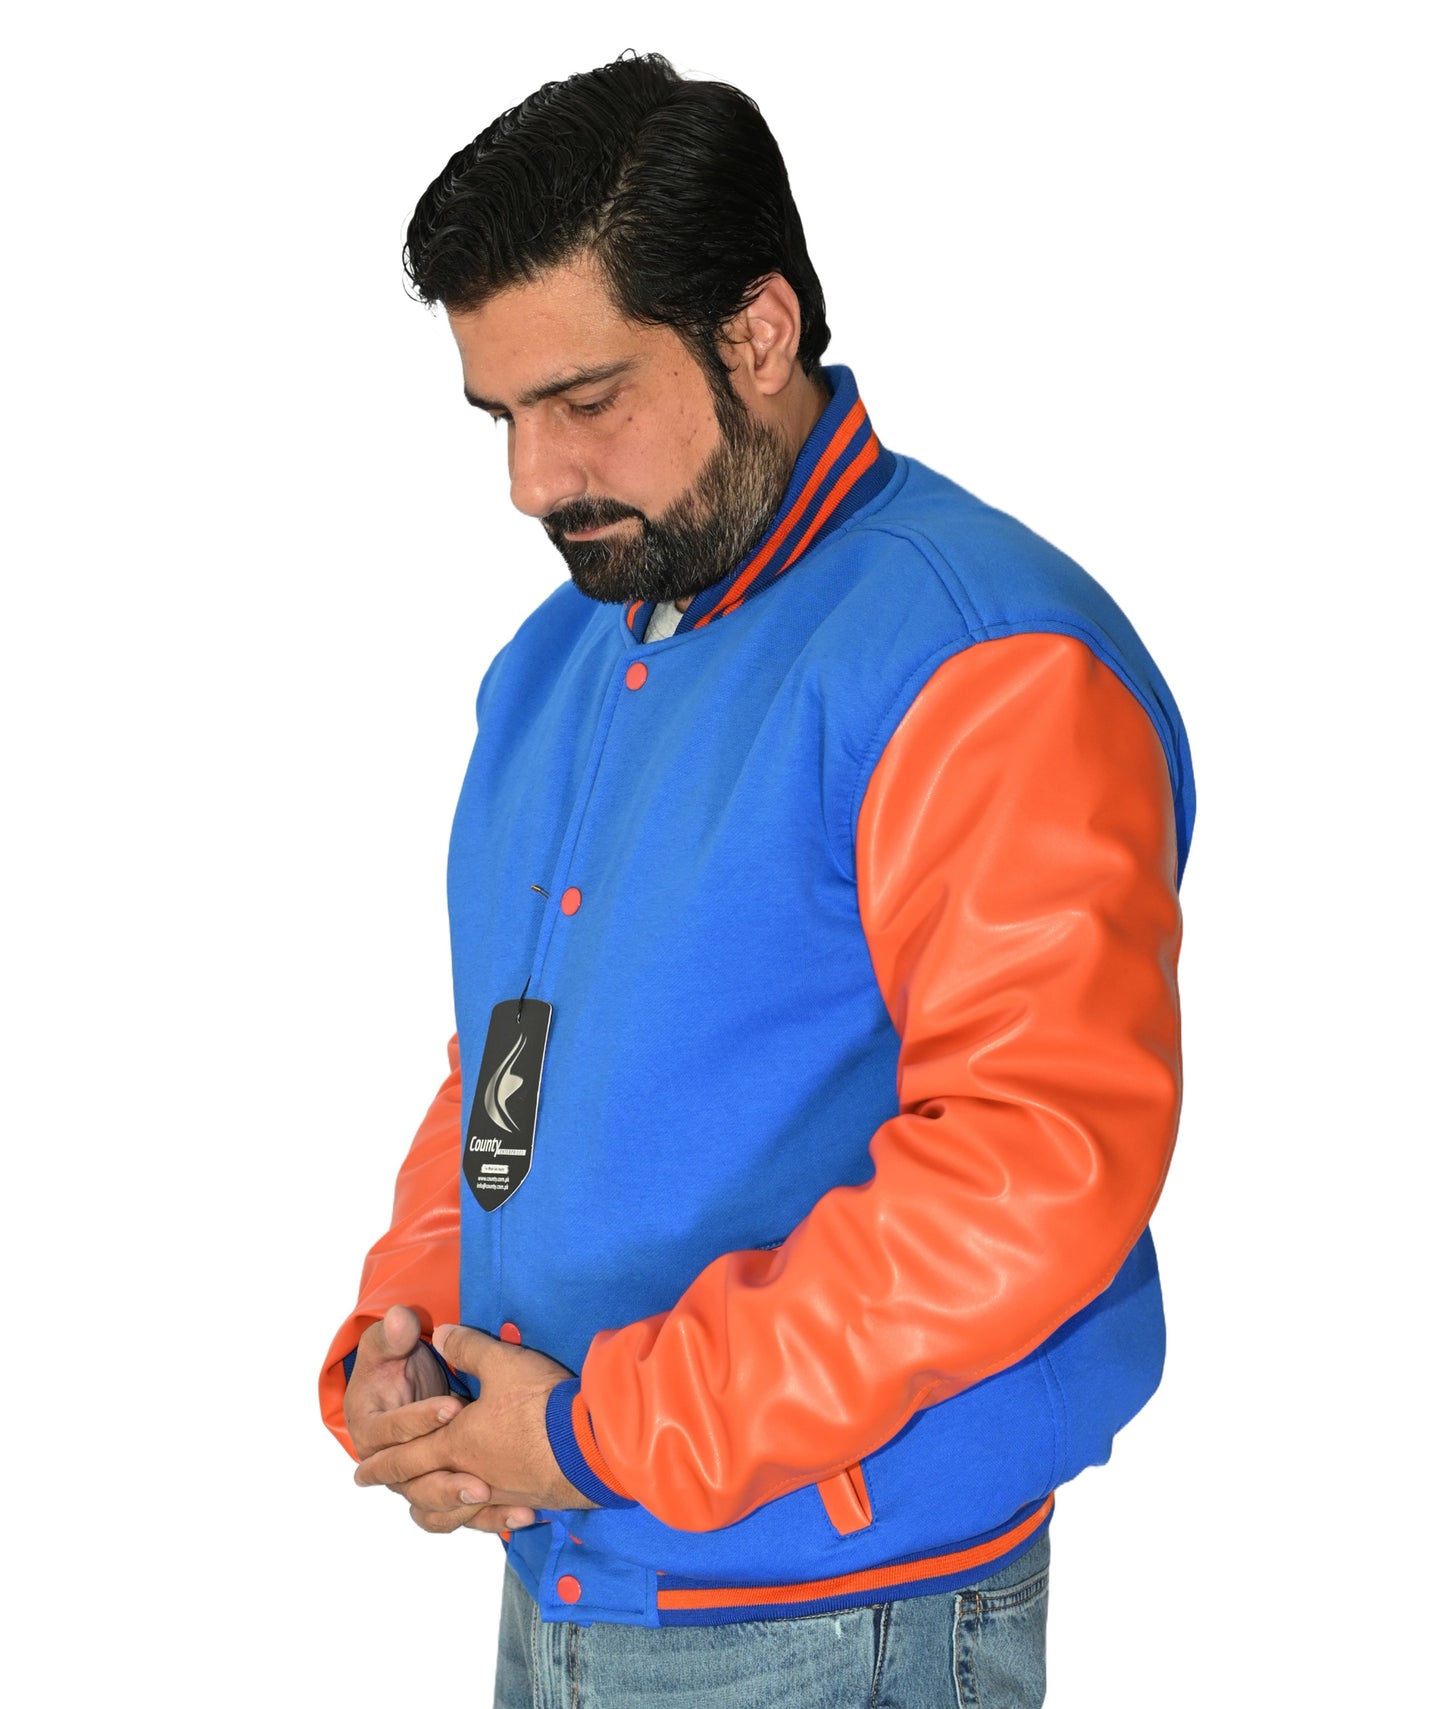 Luxury Blue Body and Orange Leather Sleeves Varsity College Jacket